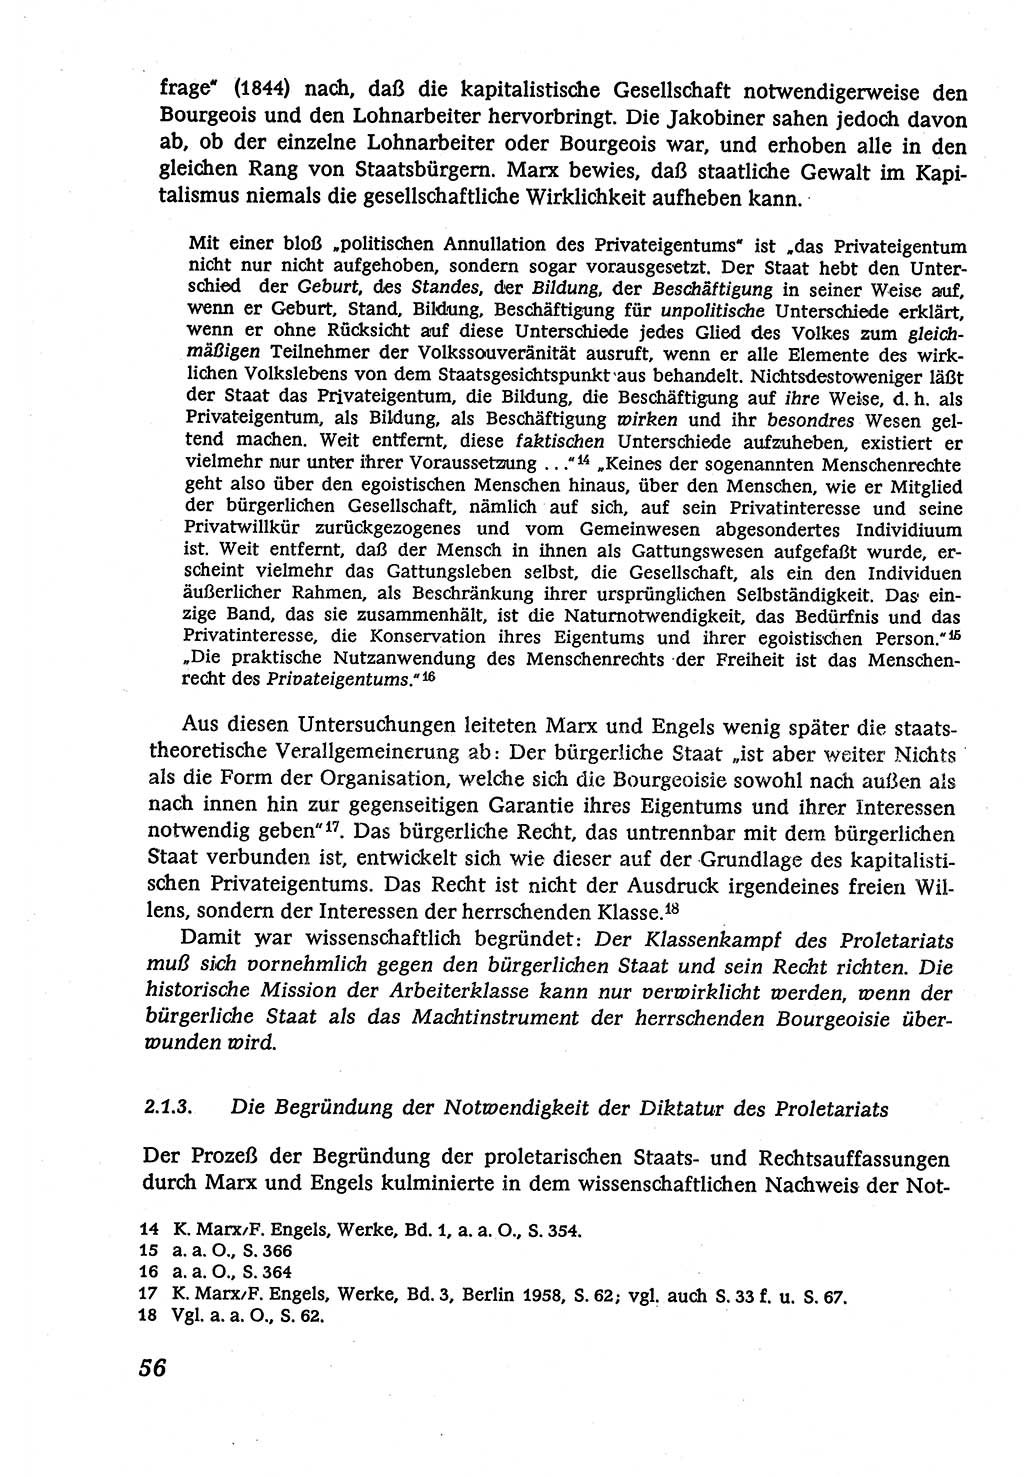 Marxistisch-leninistische (ML) Staats- und Rechtstheorie [Deutsche Demokratische Republik (DDR)], Lehrbuch 1980, Seite 56 (ML St.-R.-Th. DDR Lb. 1980, S. 56)